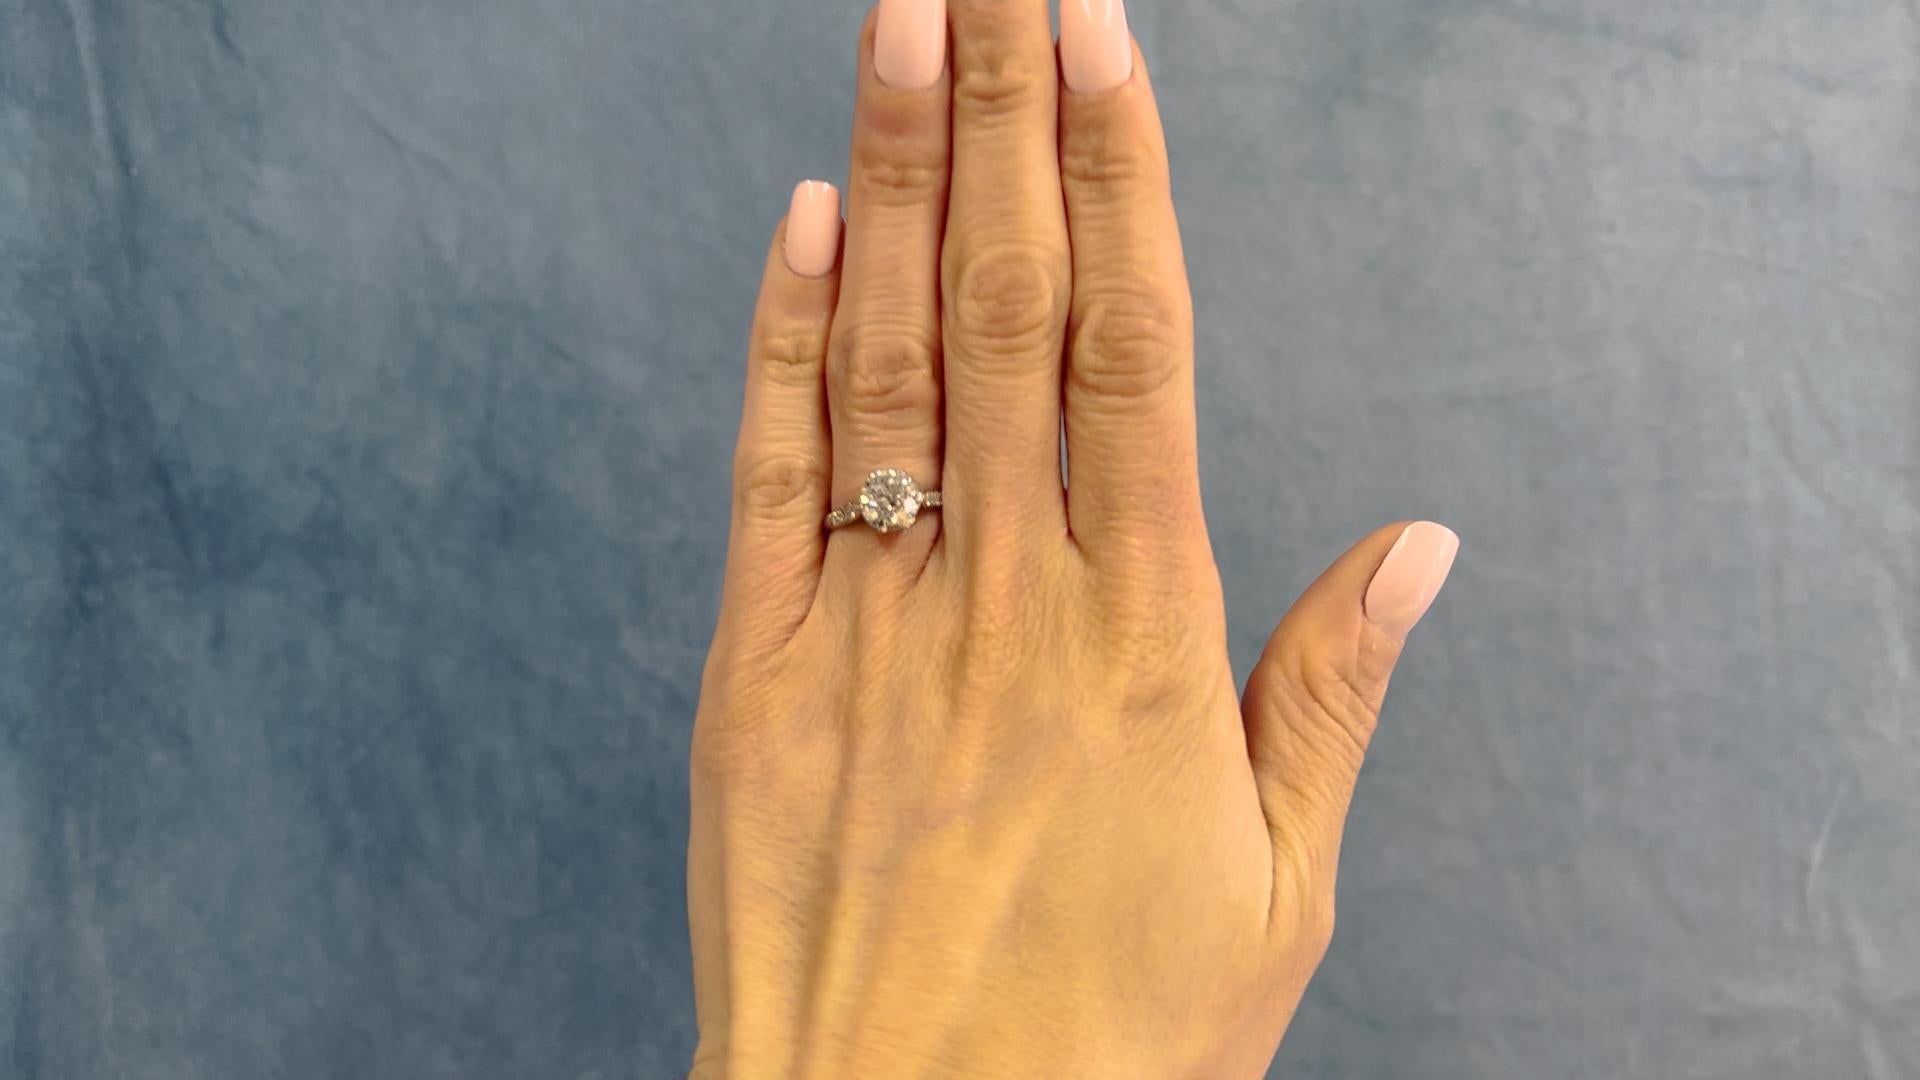 Ein Art Deco GIA 2.45 Karat Old European Cut Diamond Platinum Ring. Mit einem GIA-Diamanten im alten europäischen Schliff von 2,45 Karat, begleitet von der GIA-Nummer 2225888750, die besagt, dass der Diamant die Farbe H und die Reinheit I1 hat.